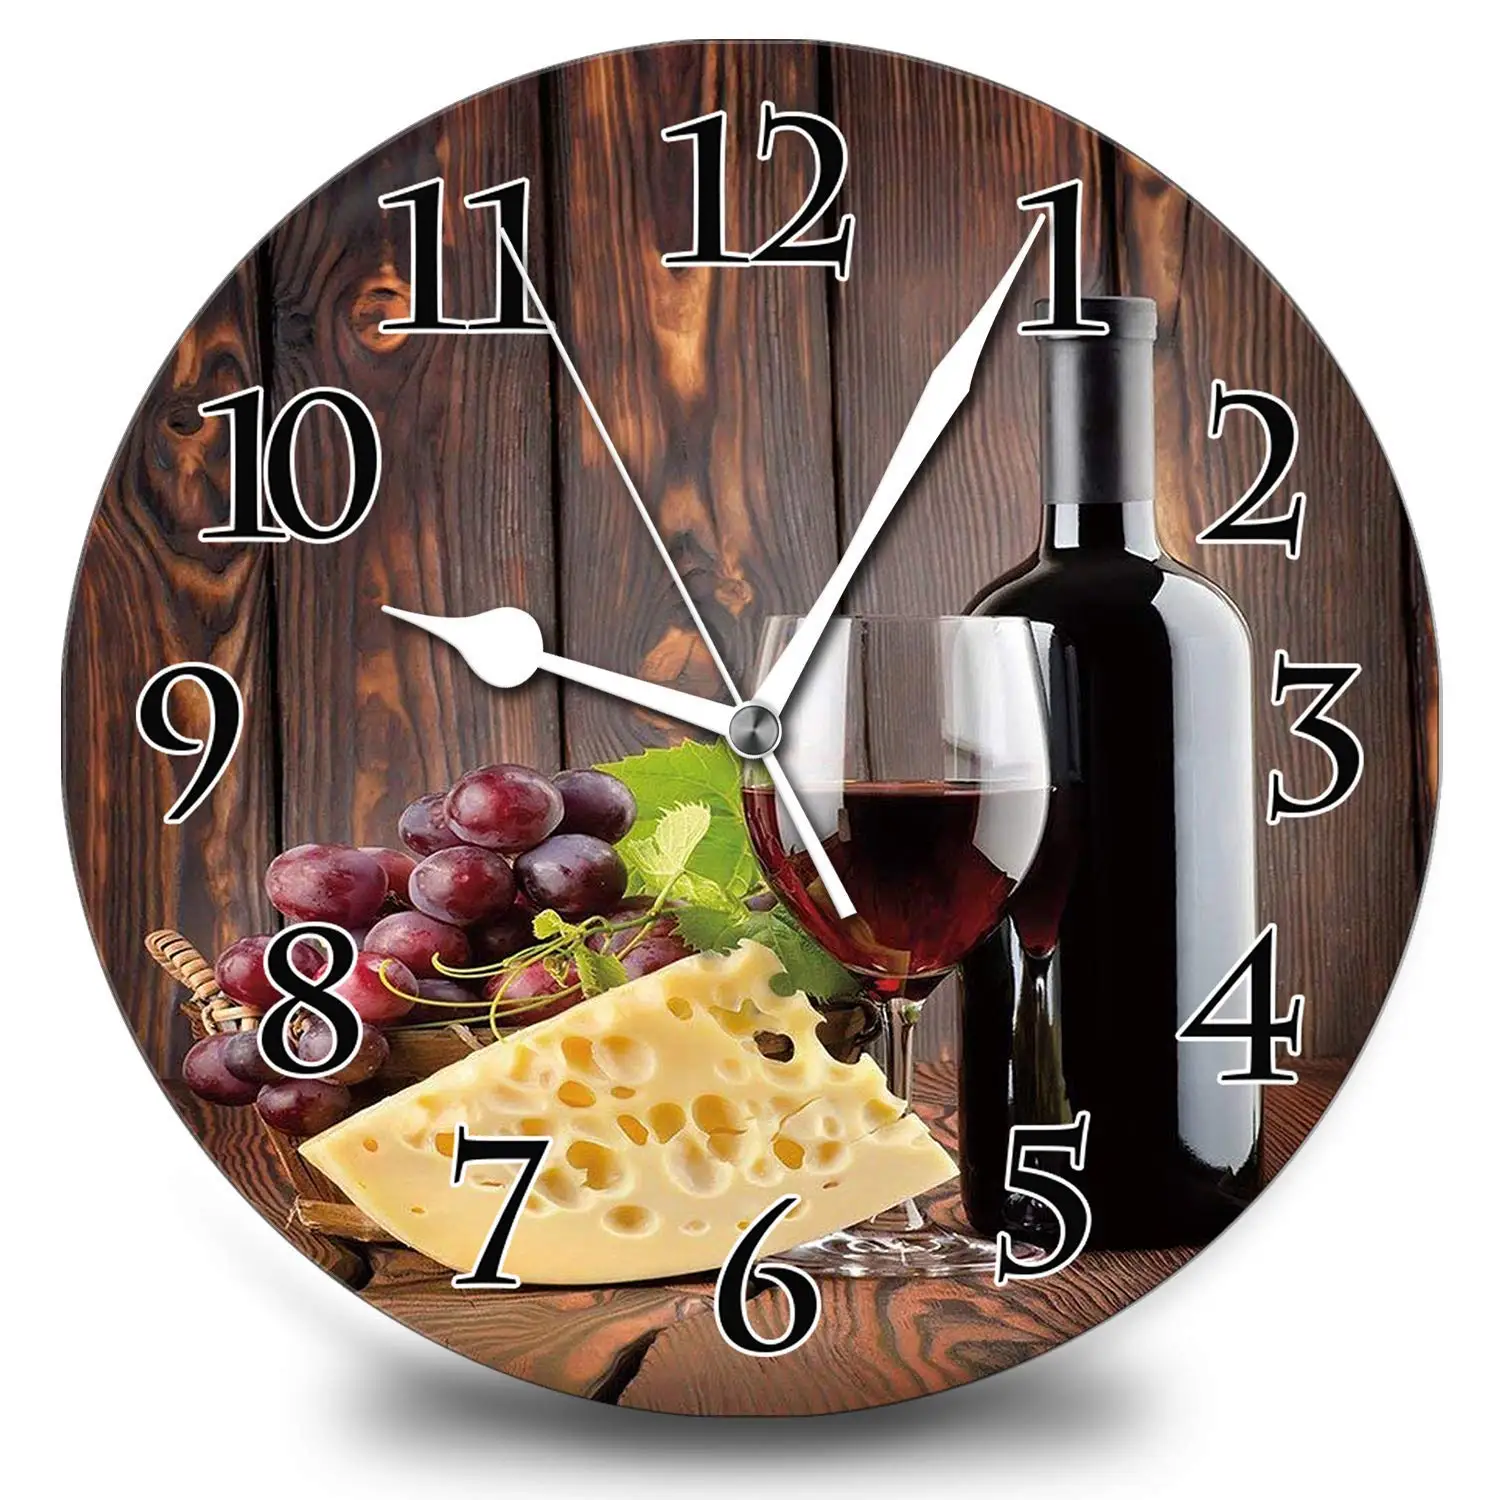 

Wine Champagne Grape Wall Clock Vintage Design Wooden Round Clock Arabic Numerals Design Non Ticking Retro Clocks Decor 12 Inch